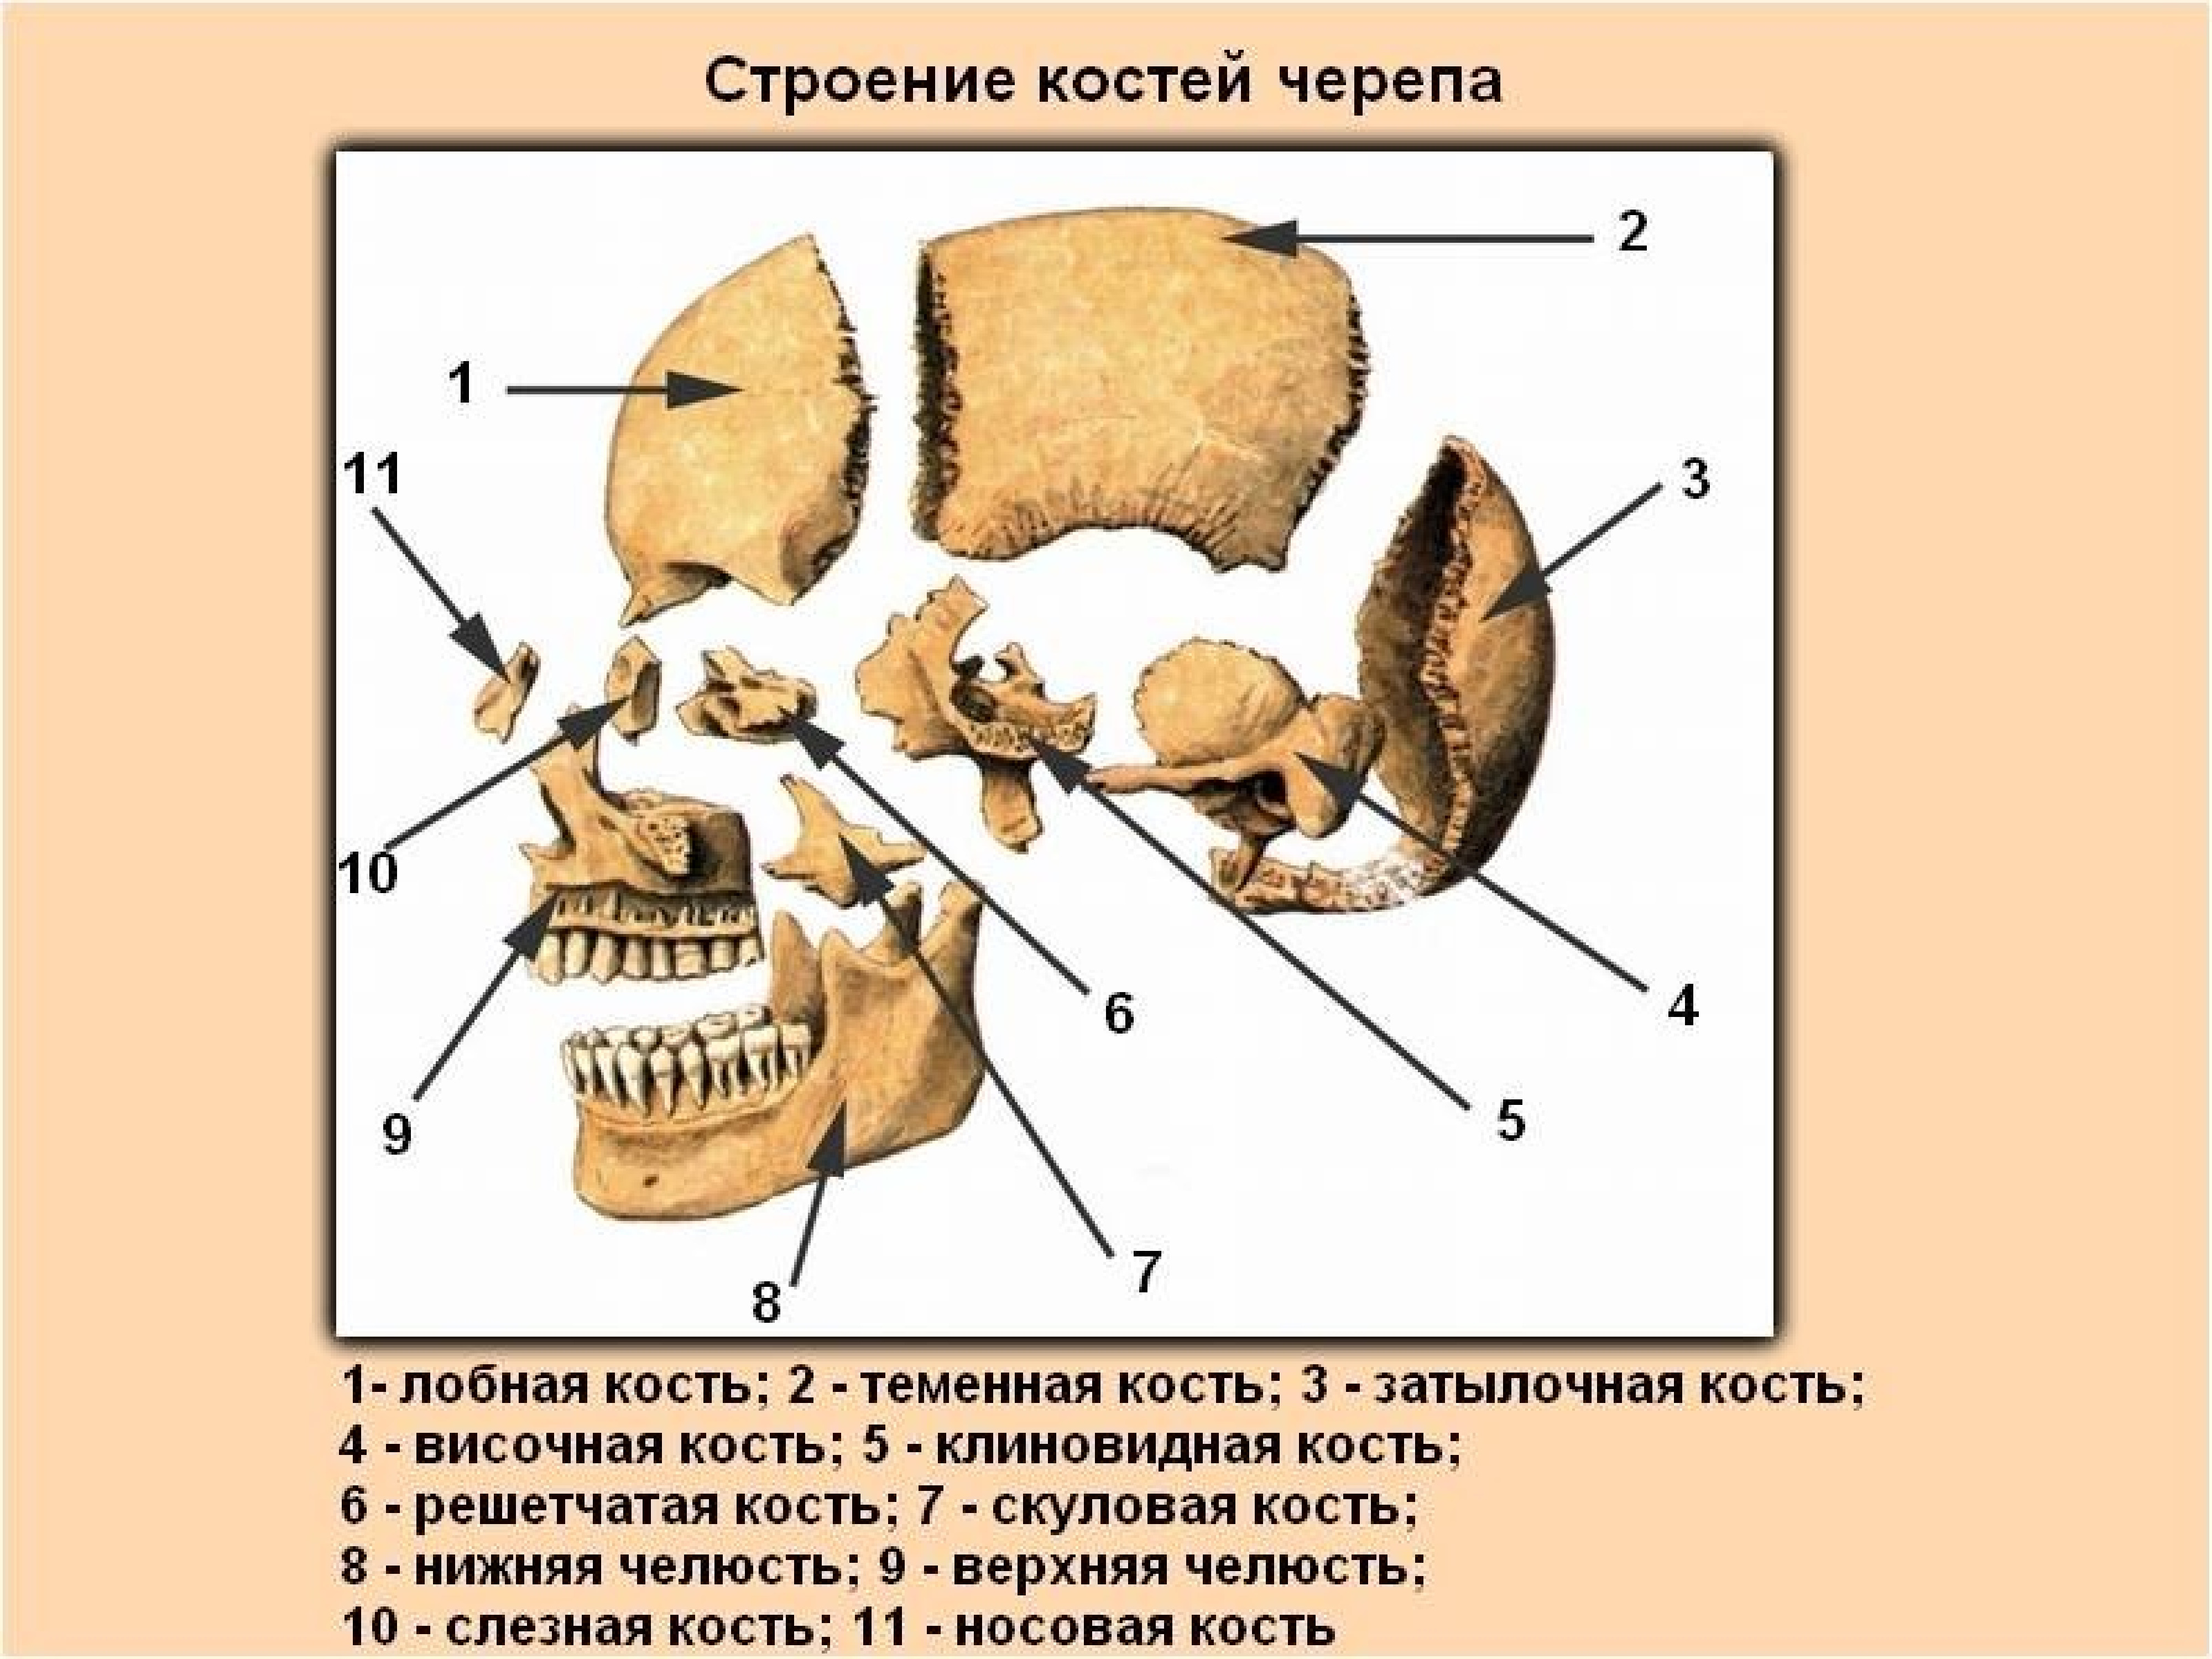 Все кости черепа соединены друг с другом. Строение кости черепа человека. Строение костей черепа человека анатомия. Строение костей головы человека. Череп человека с названием костей.